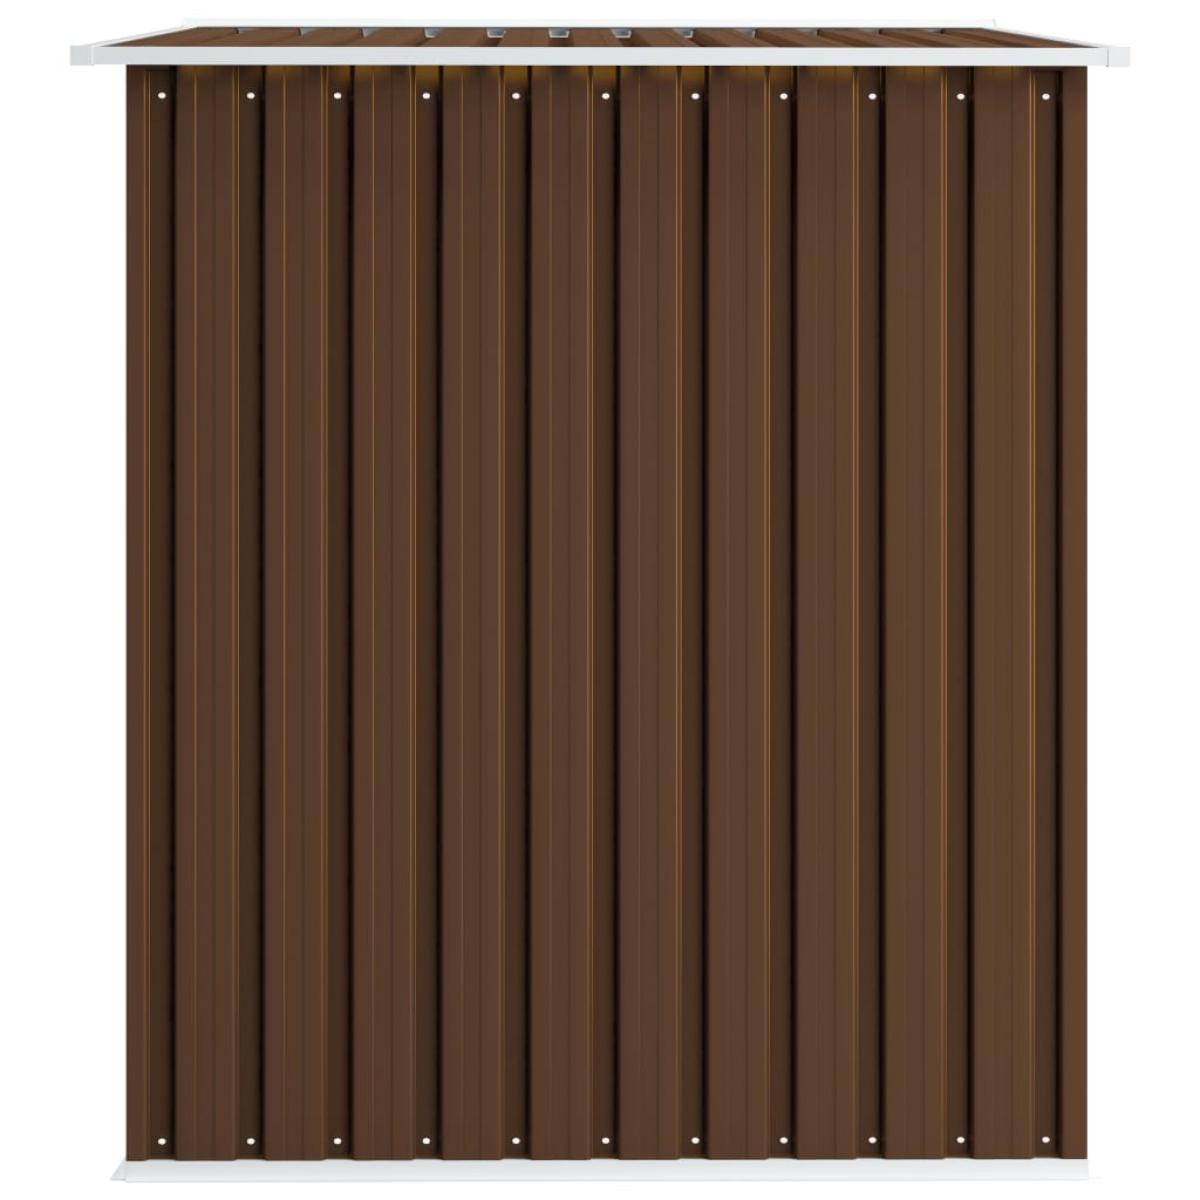 Caseta de almacenamiento jardín acero marrón 257x205x178 cm